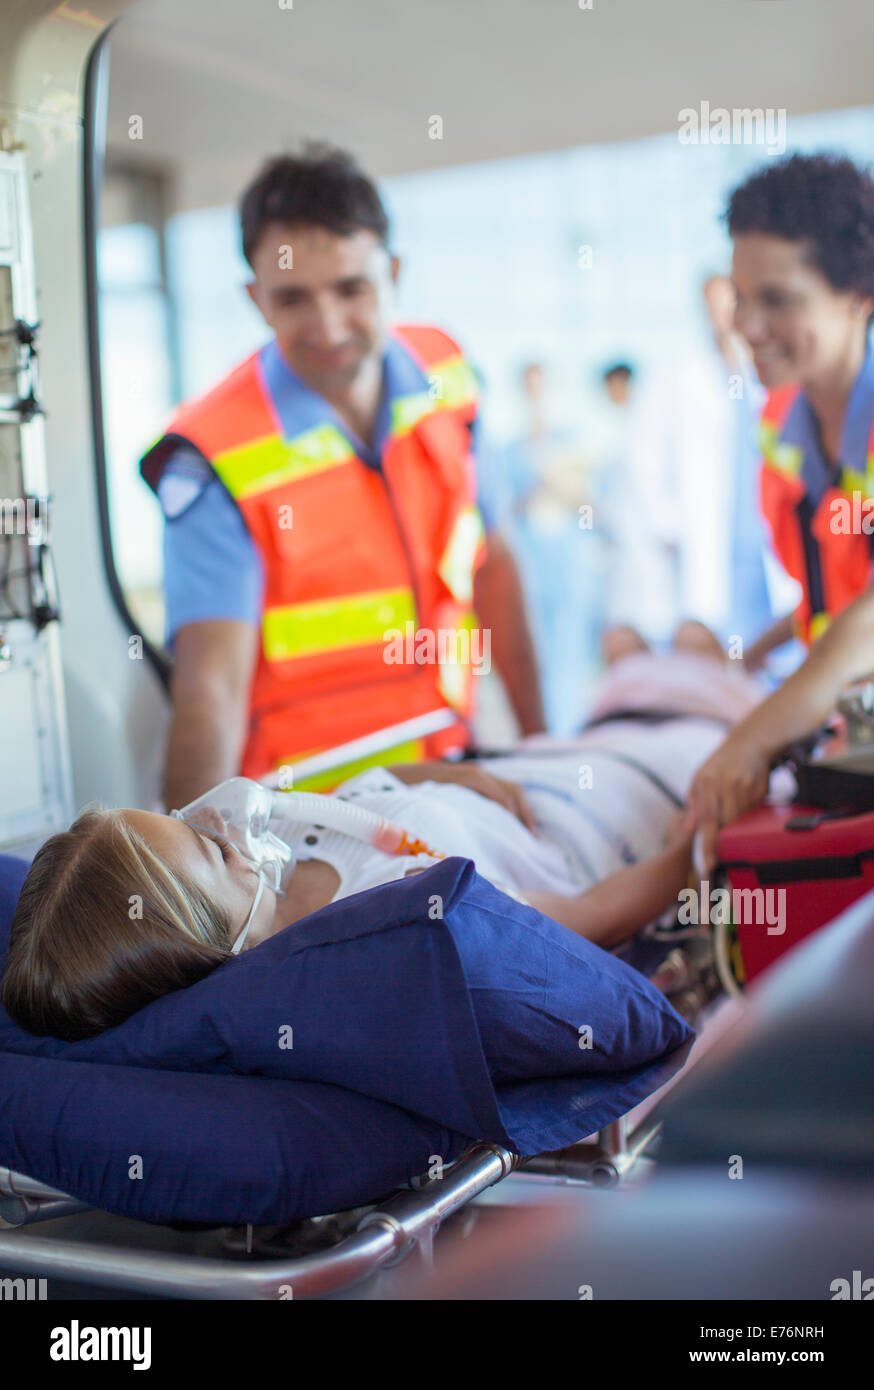 Les ambulanciers examining patient sur civière d'ambulance Banque D'Images